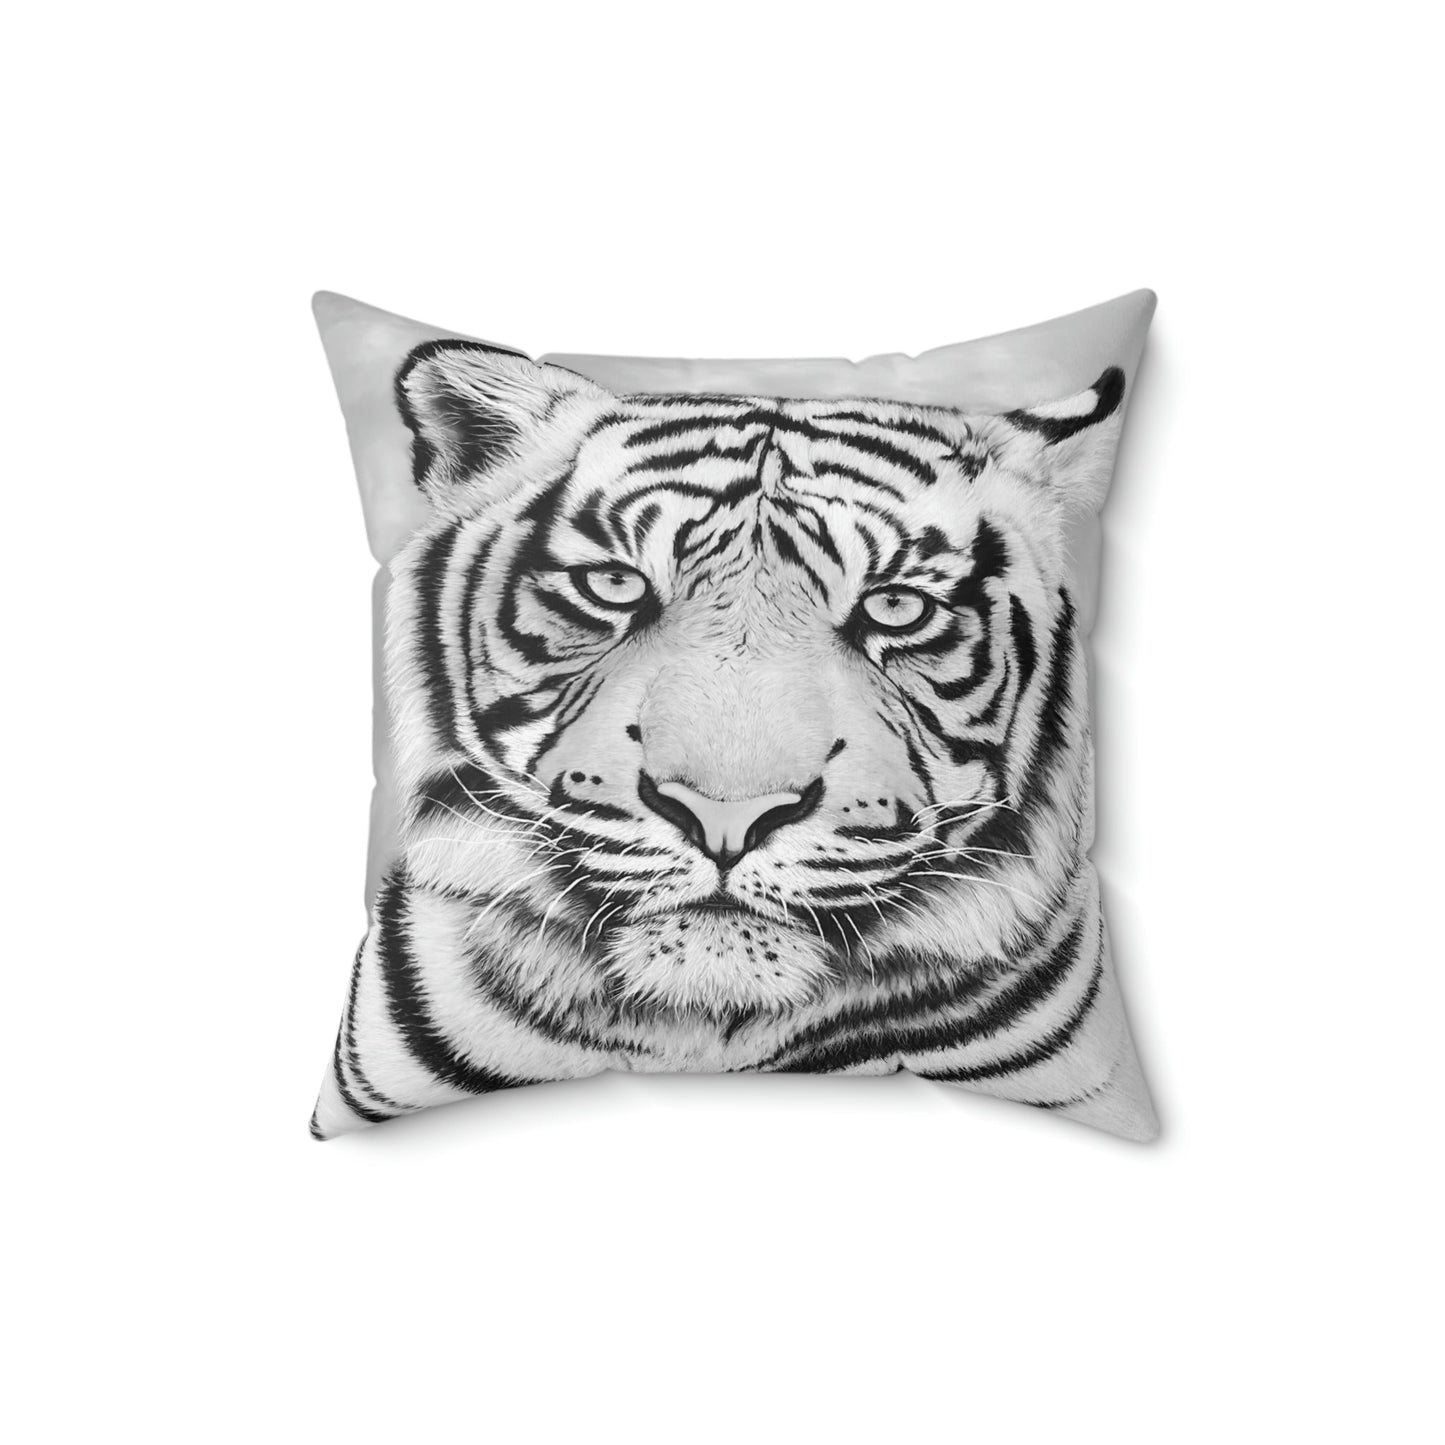 Spun Polyester Throw Pillow - "MONOCHROME TIGER"